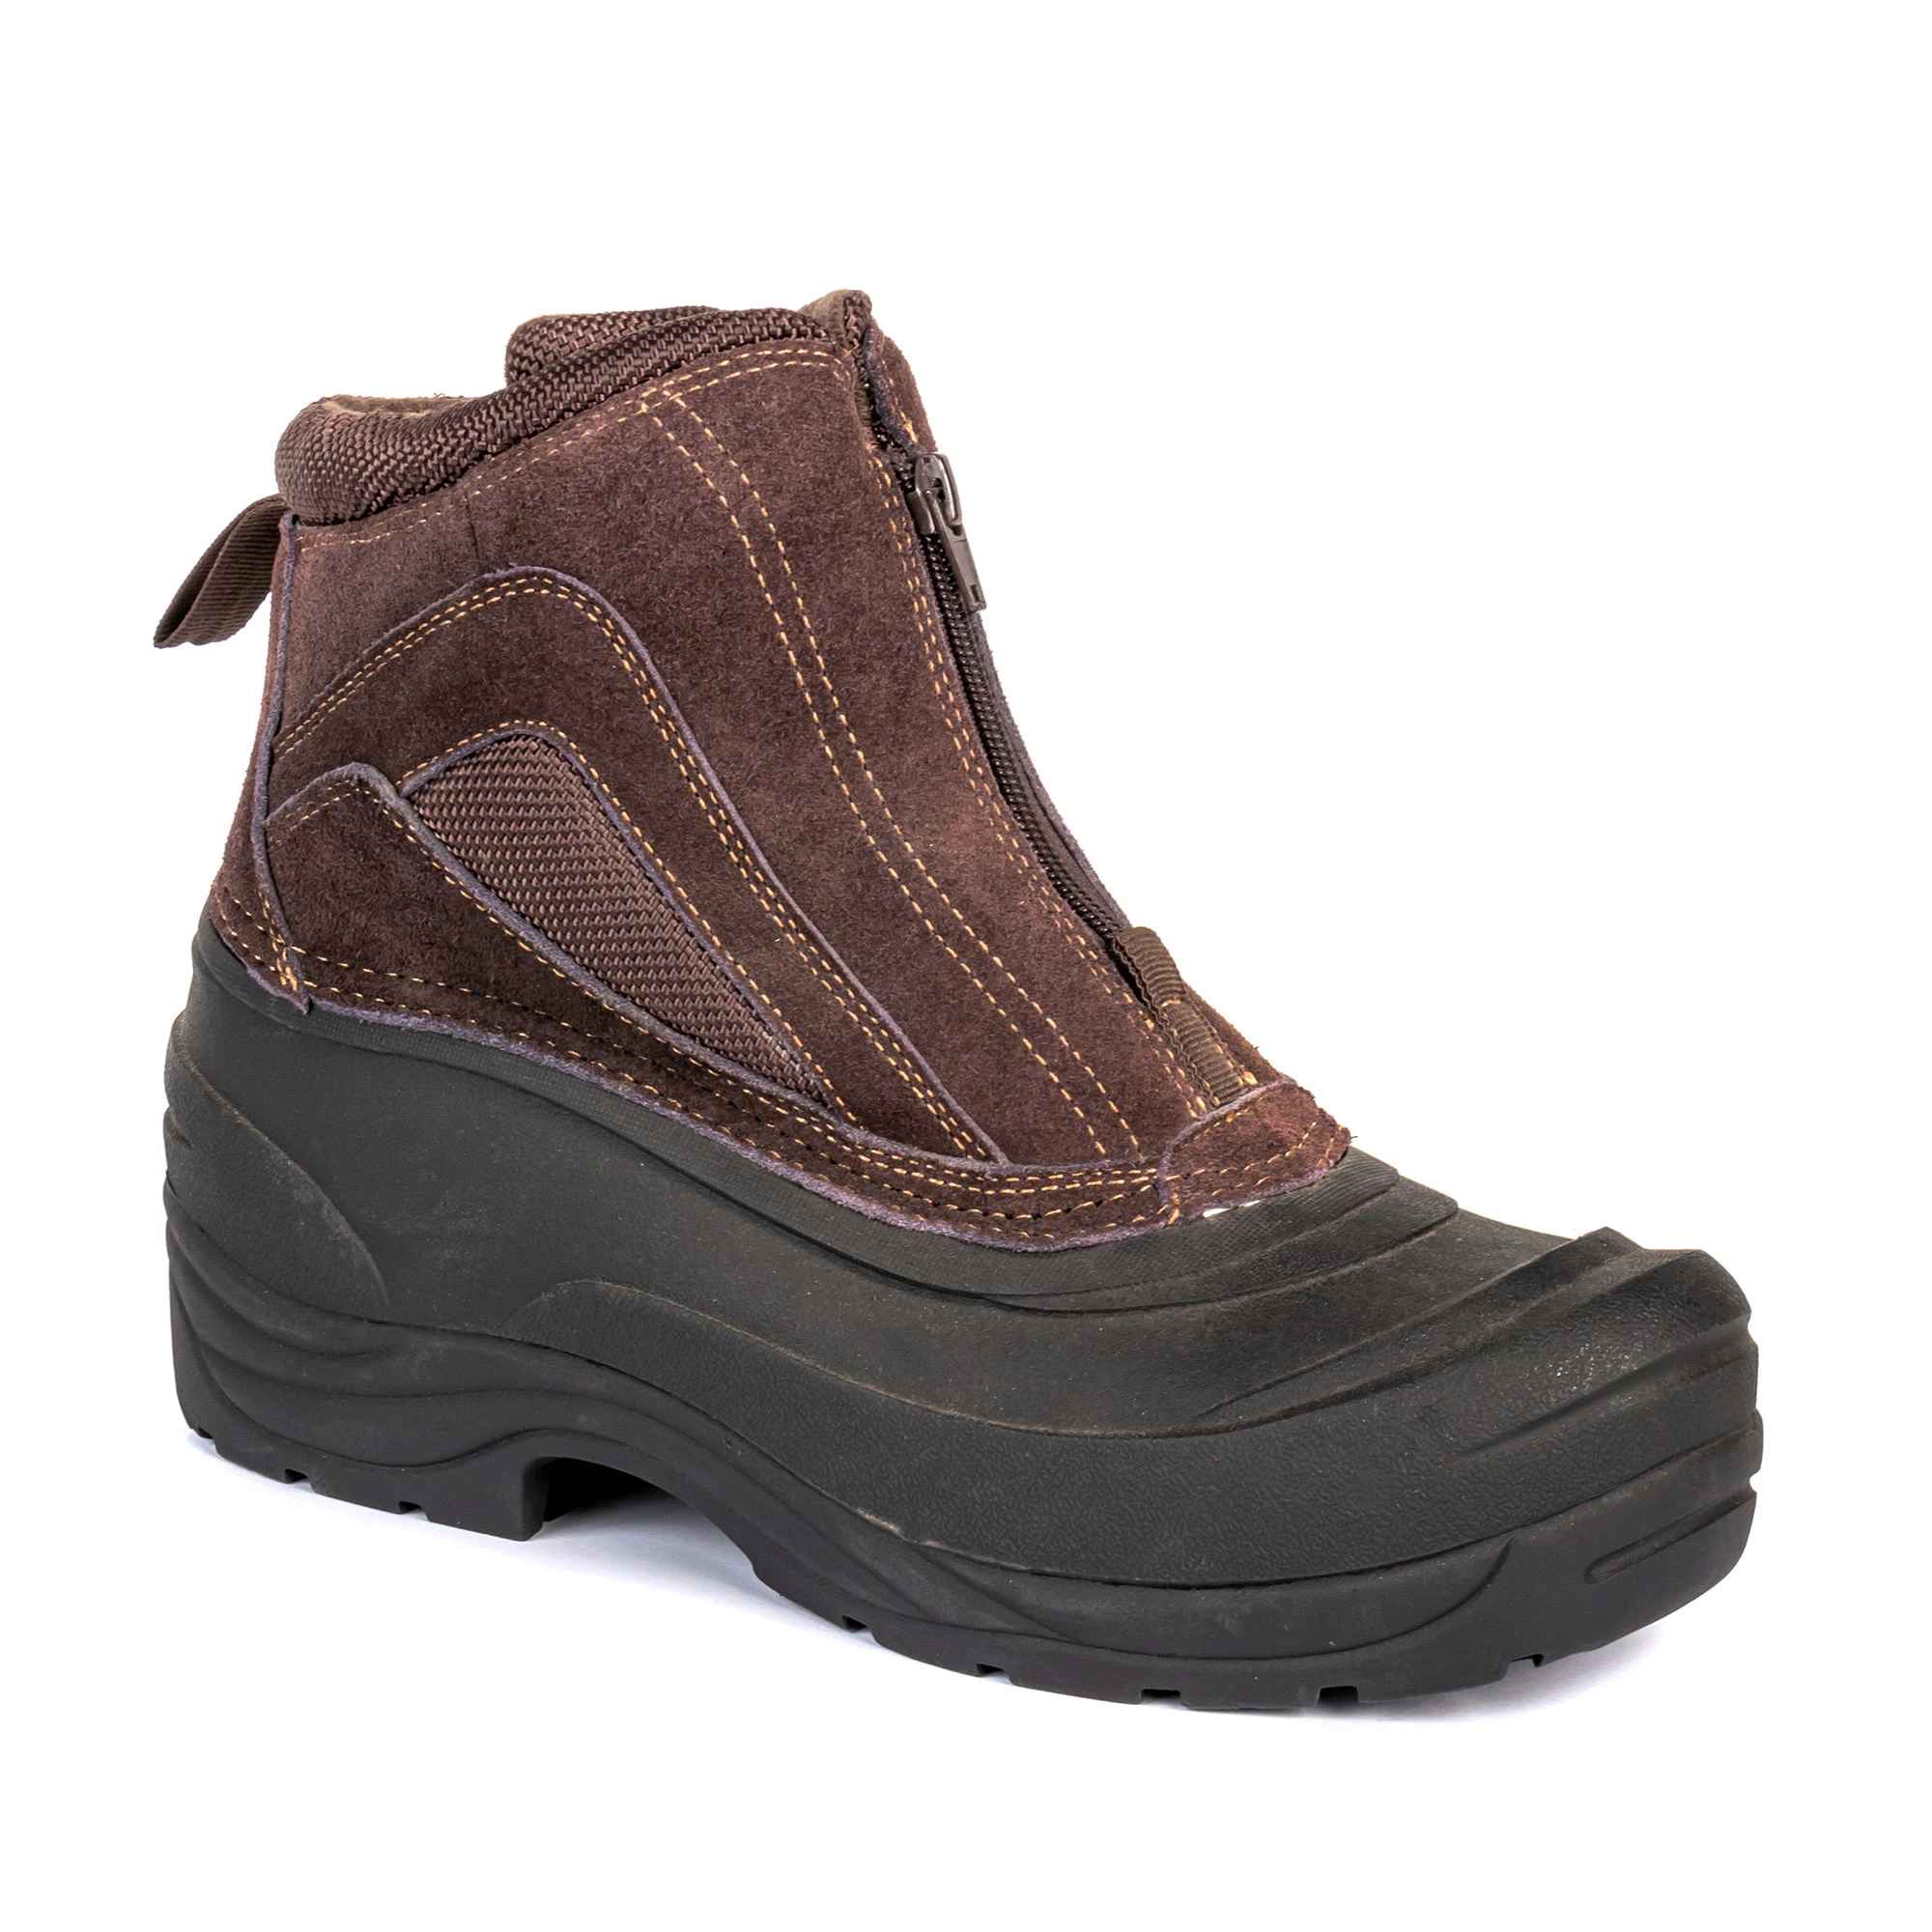 Waterproof Brown Safety Shoes Men Anti-Slip Sport Sneaker Warm Winter Boots